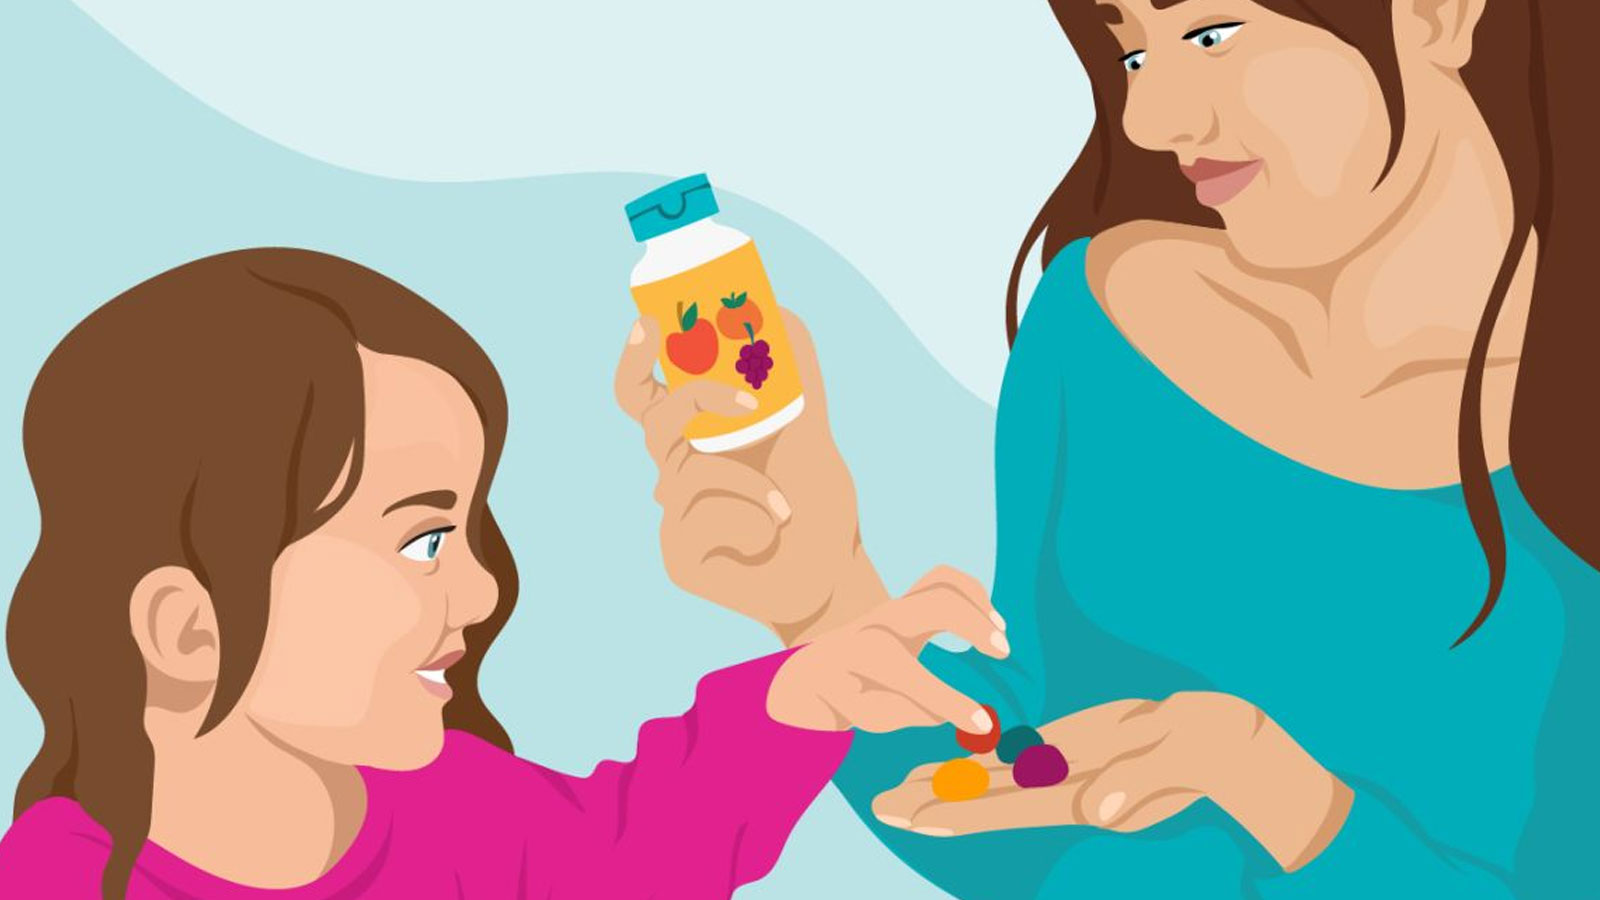 Χρειάζεται Στα Παιδιά Να Δίνουμε Βιταμίνες; Τα Γνωστά Καθημερινά Ζελεδάκια, Το Μουρουνέλαιο ή Τα Σιρόπια;